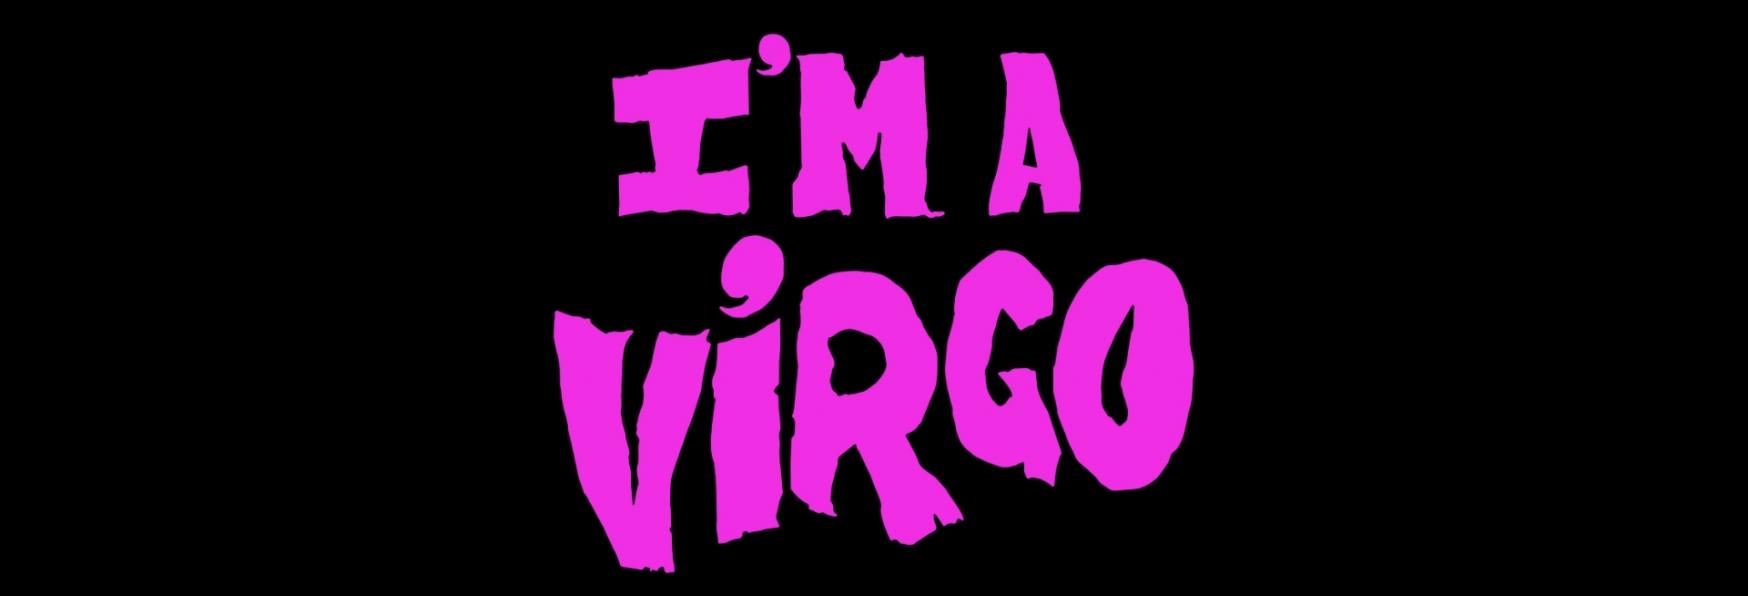 I'm a Virgo: il Trailer e la Data di Uscita della nuova Serie TV di Prime Video